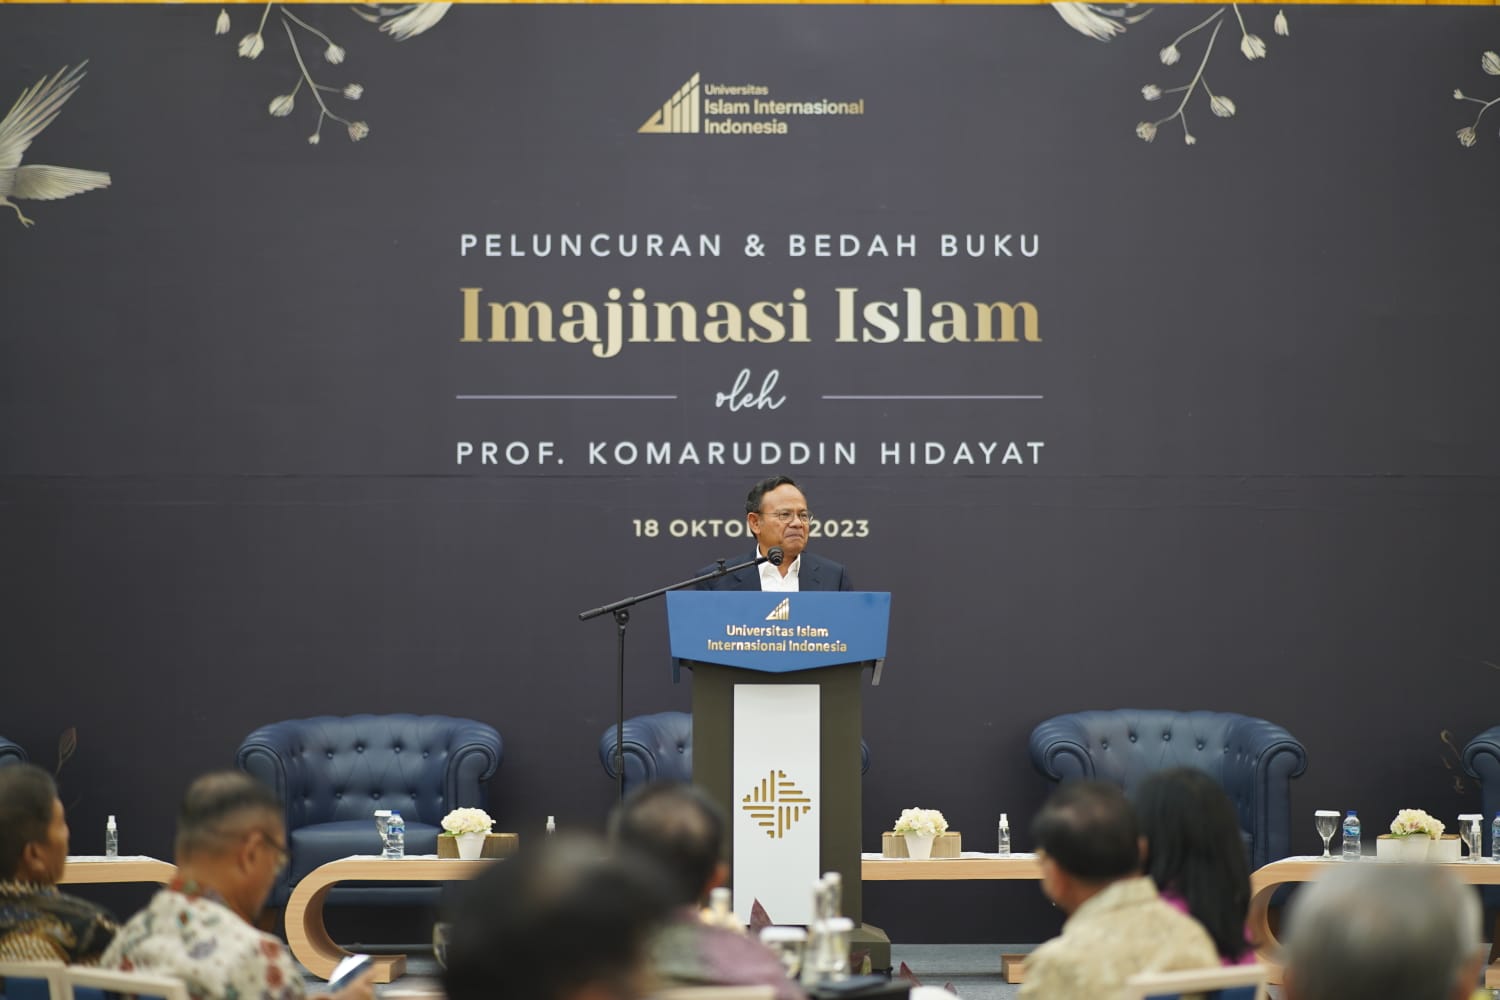 Buku 'Imajinasi Islam' Dirilis dalam Perayaan Usia 70 Tahun Prof. Komaruddin Hidayat